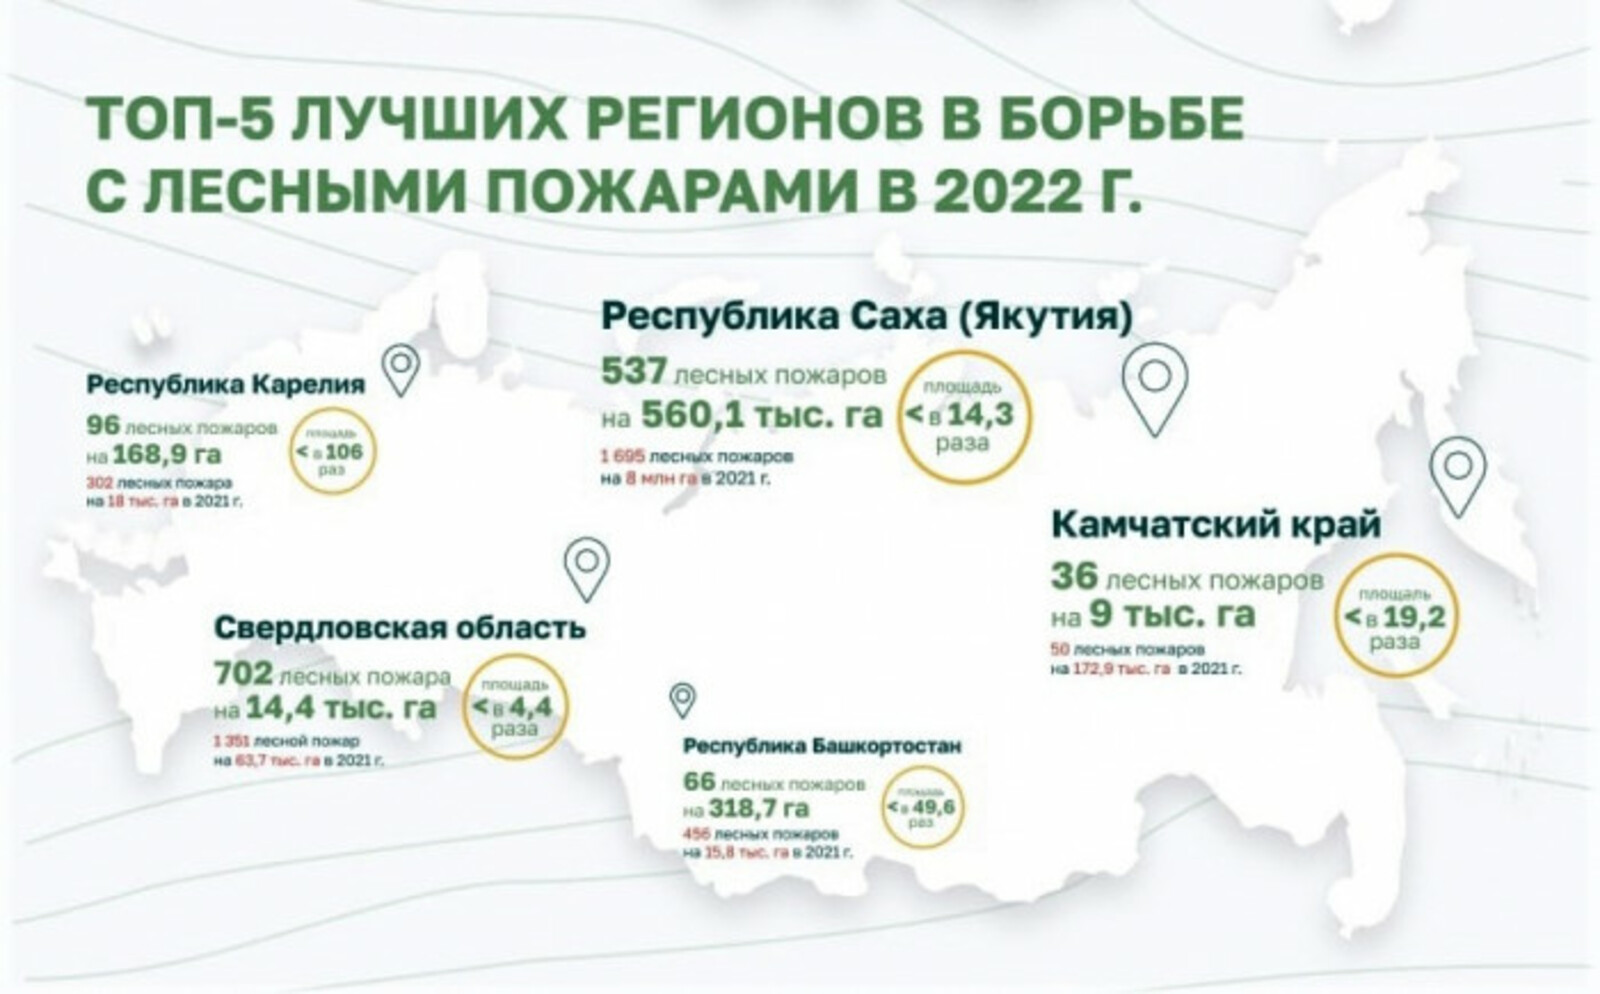 Башкортостан вошел в ТОП-5 лучших регионов России по борьбе с лесными пожарами в 2022 году